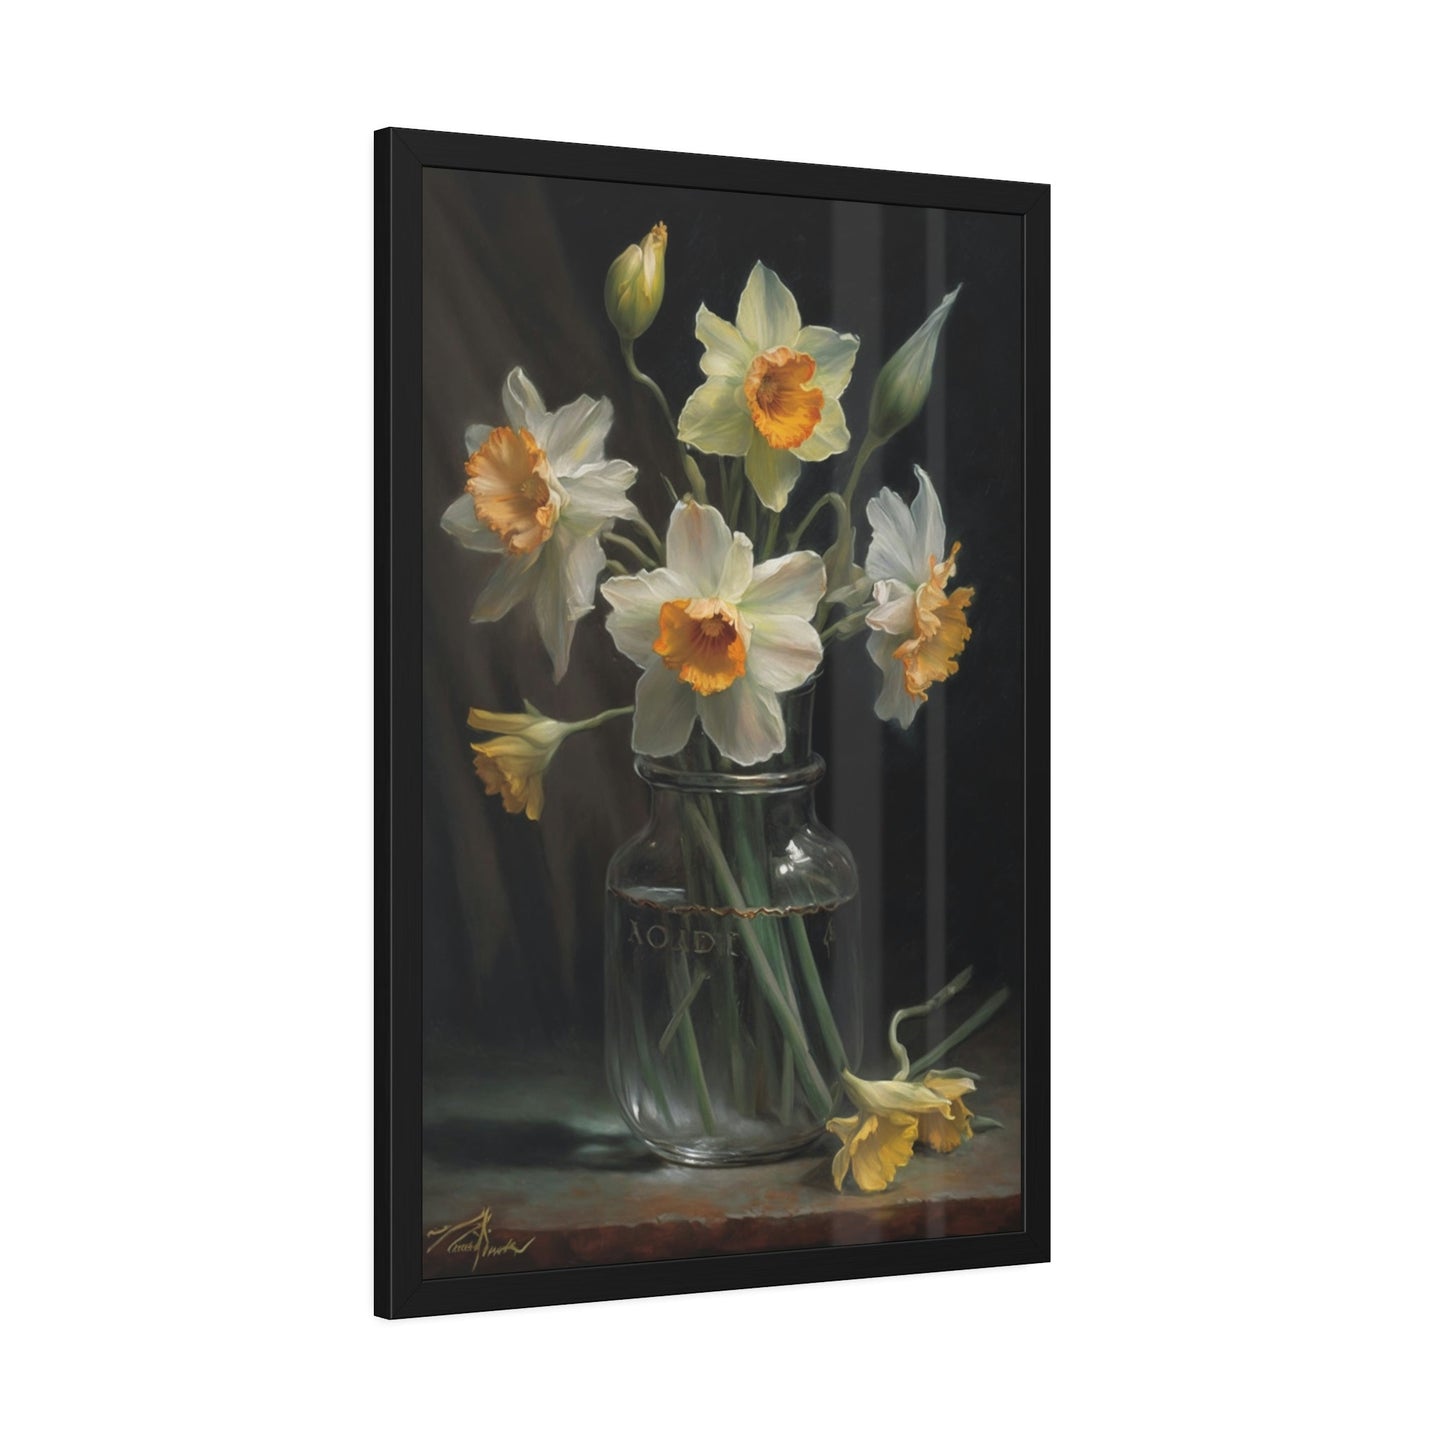 Daffodil Dreams: A Melody of Bloom